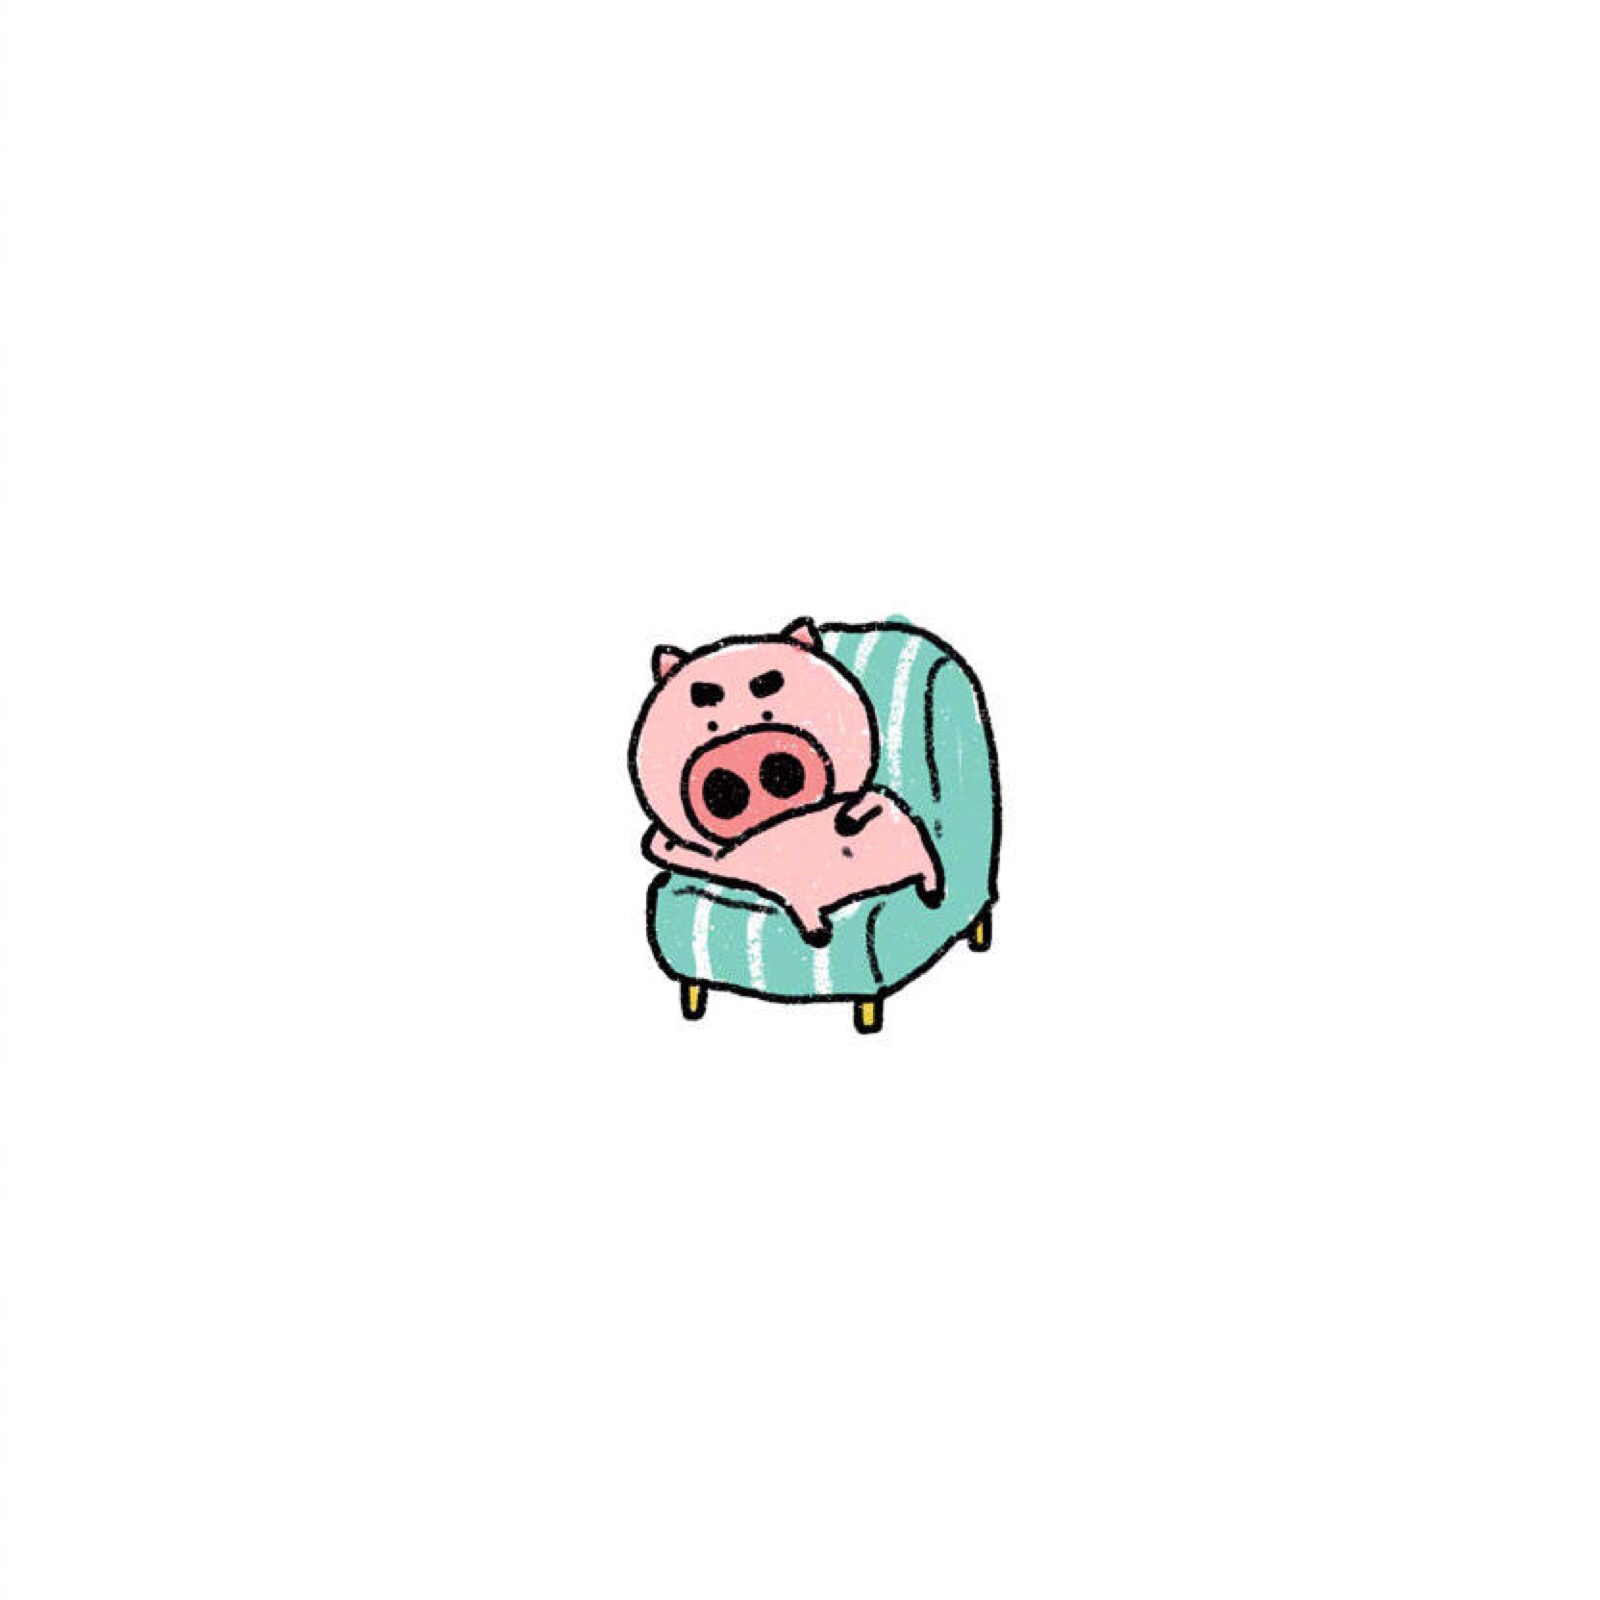 【大绵羊bobo】小猪满满赖沙发小头像#bobogo野剧场